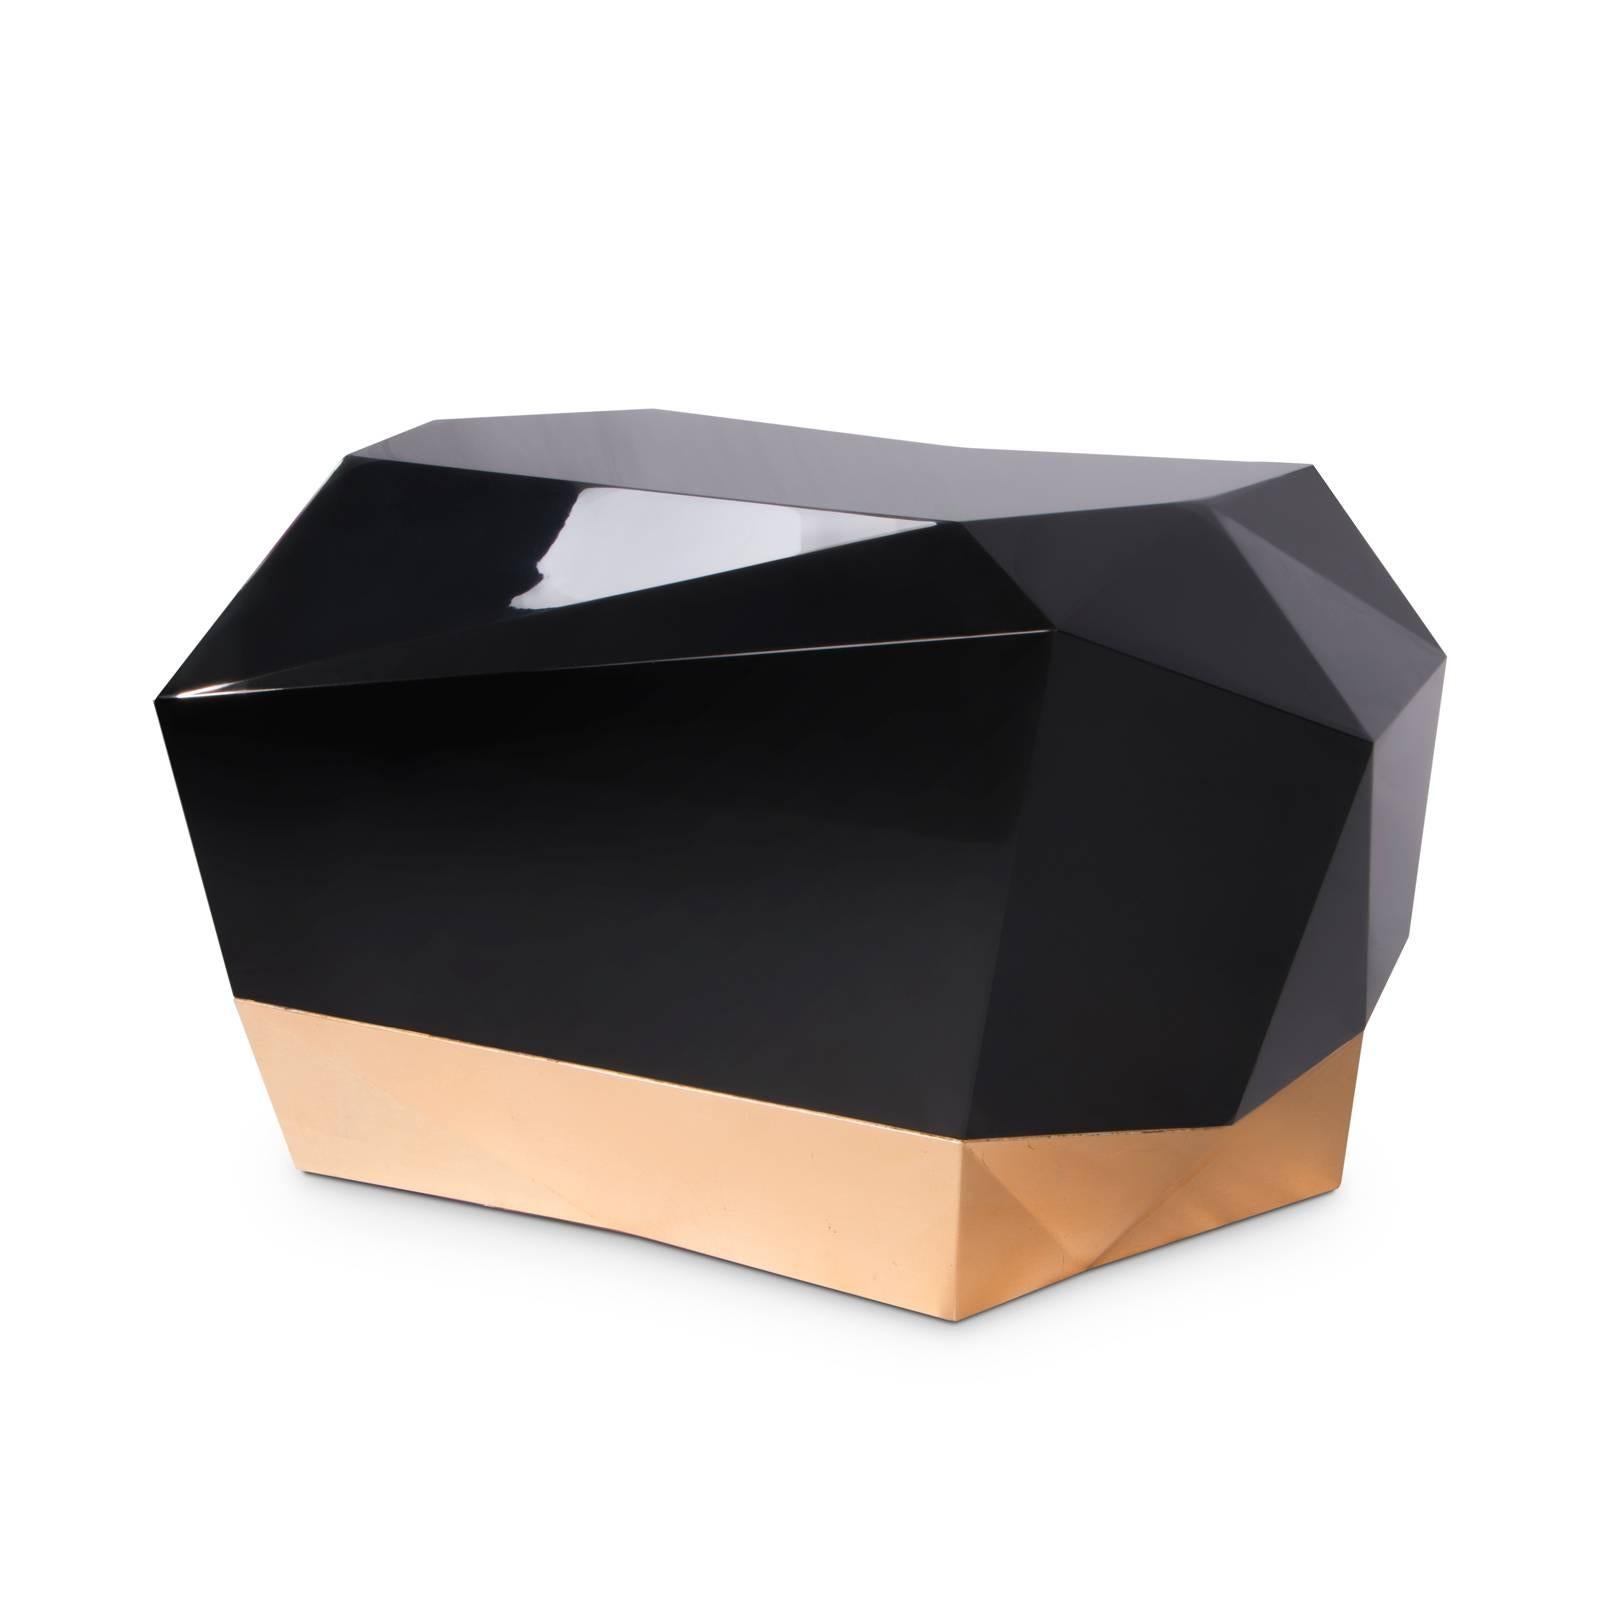 Nachttisch Fortnox mit Struktur aus Massivholz, 
schwarz lackiert und hochglänzend lackiert. Mit Gold
blatt am Boden und innen. Mit einer Schublade.


